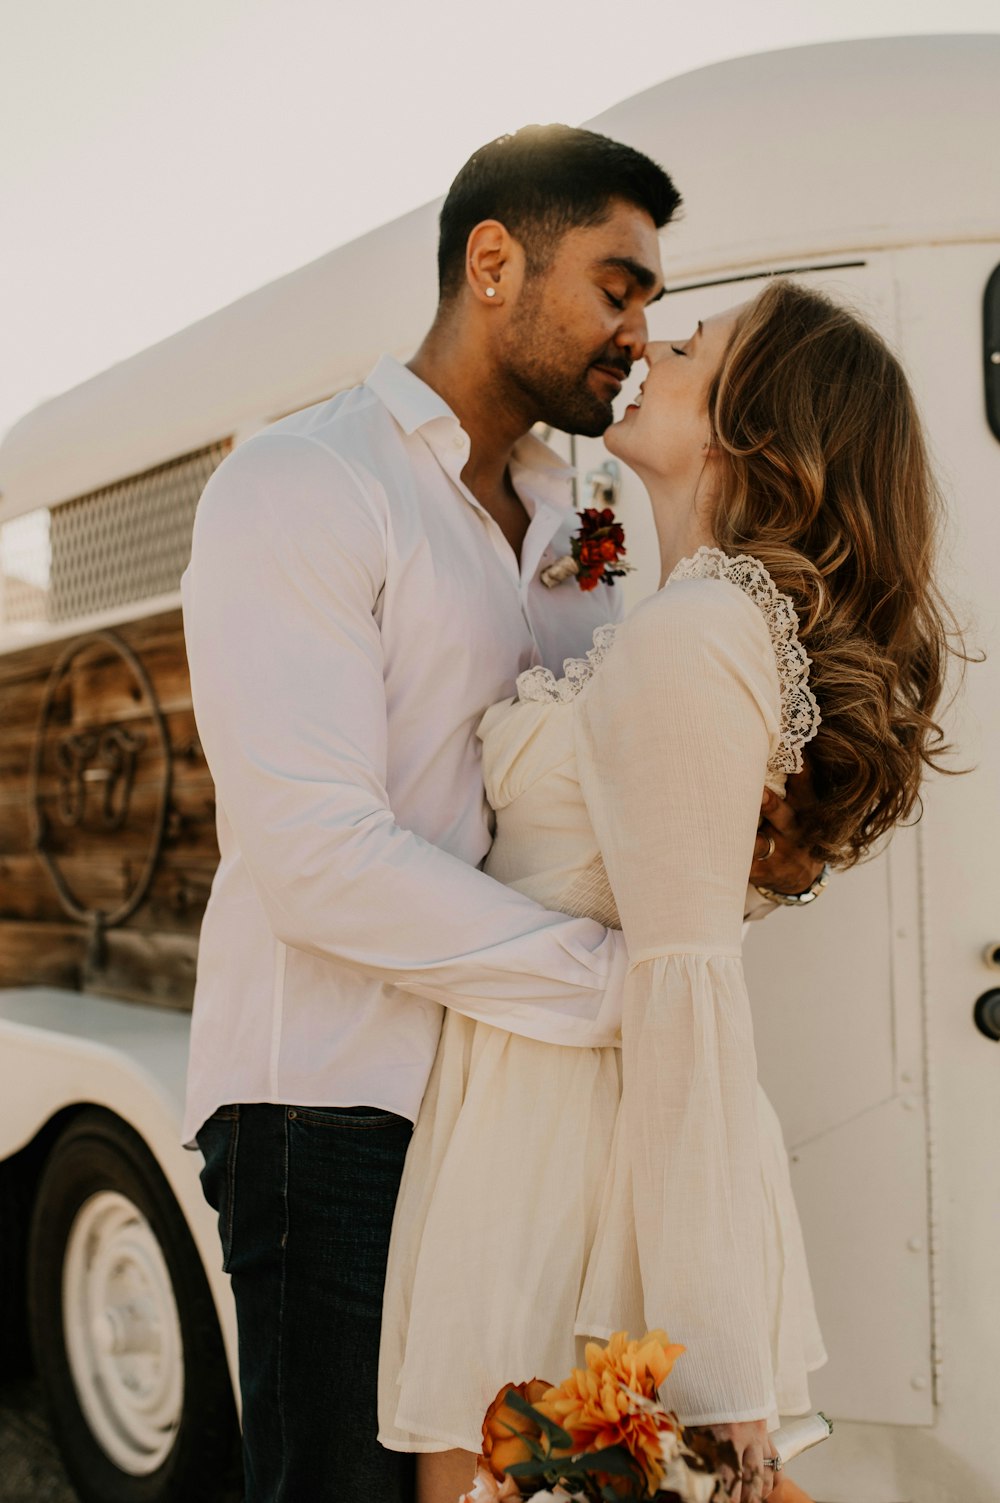 트럭 앞에서 키스하는 남자와 여자